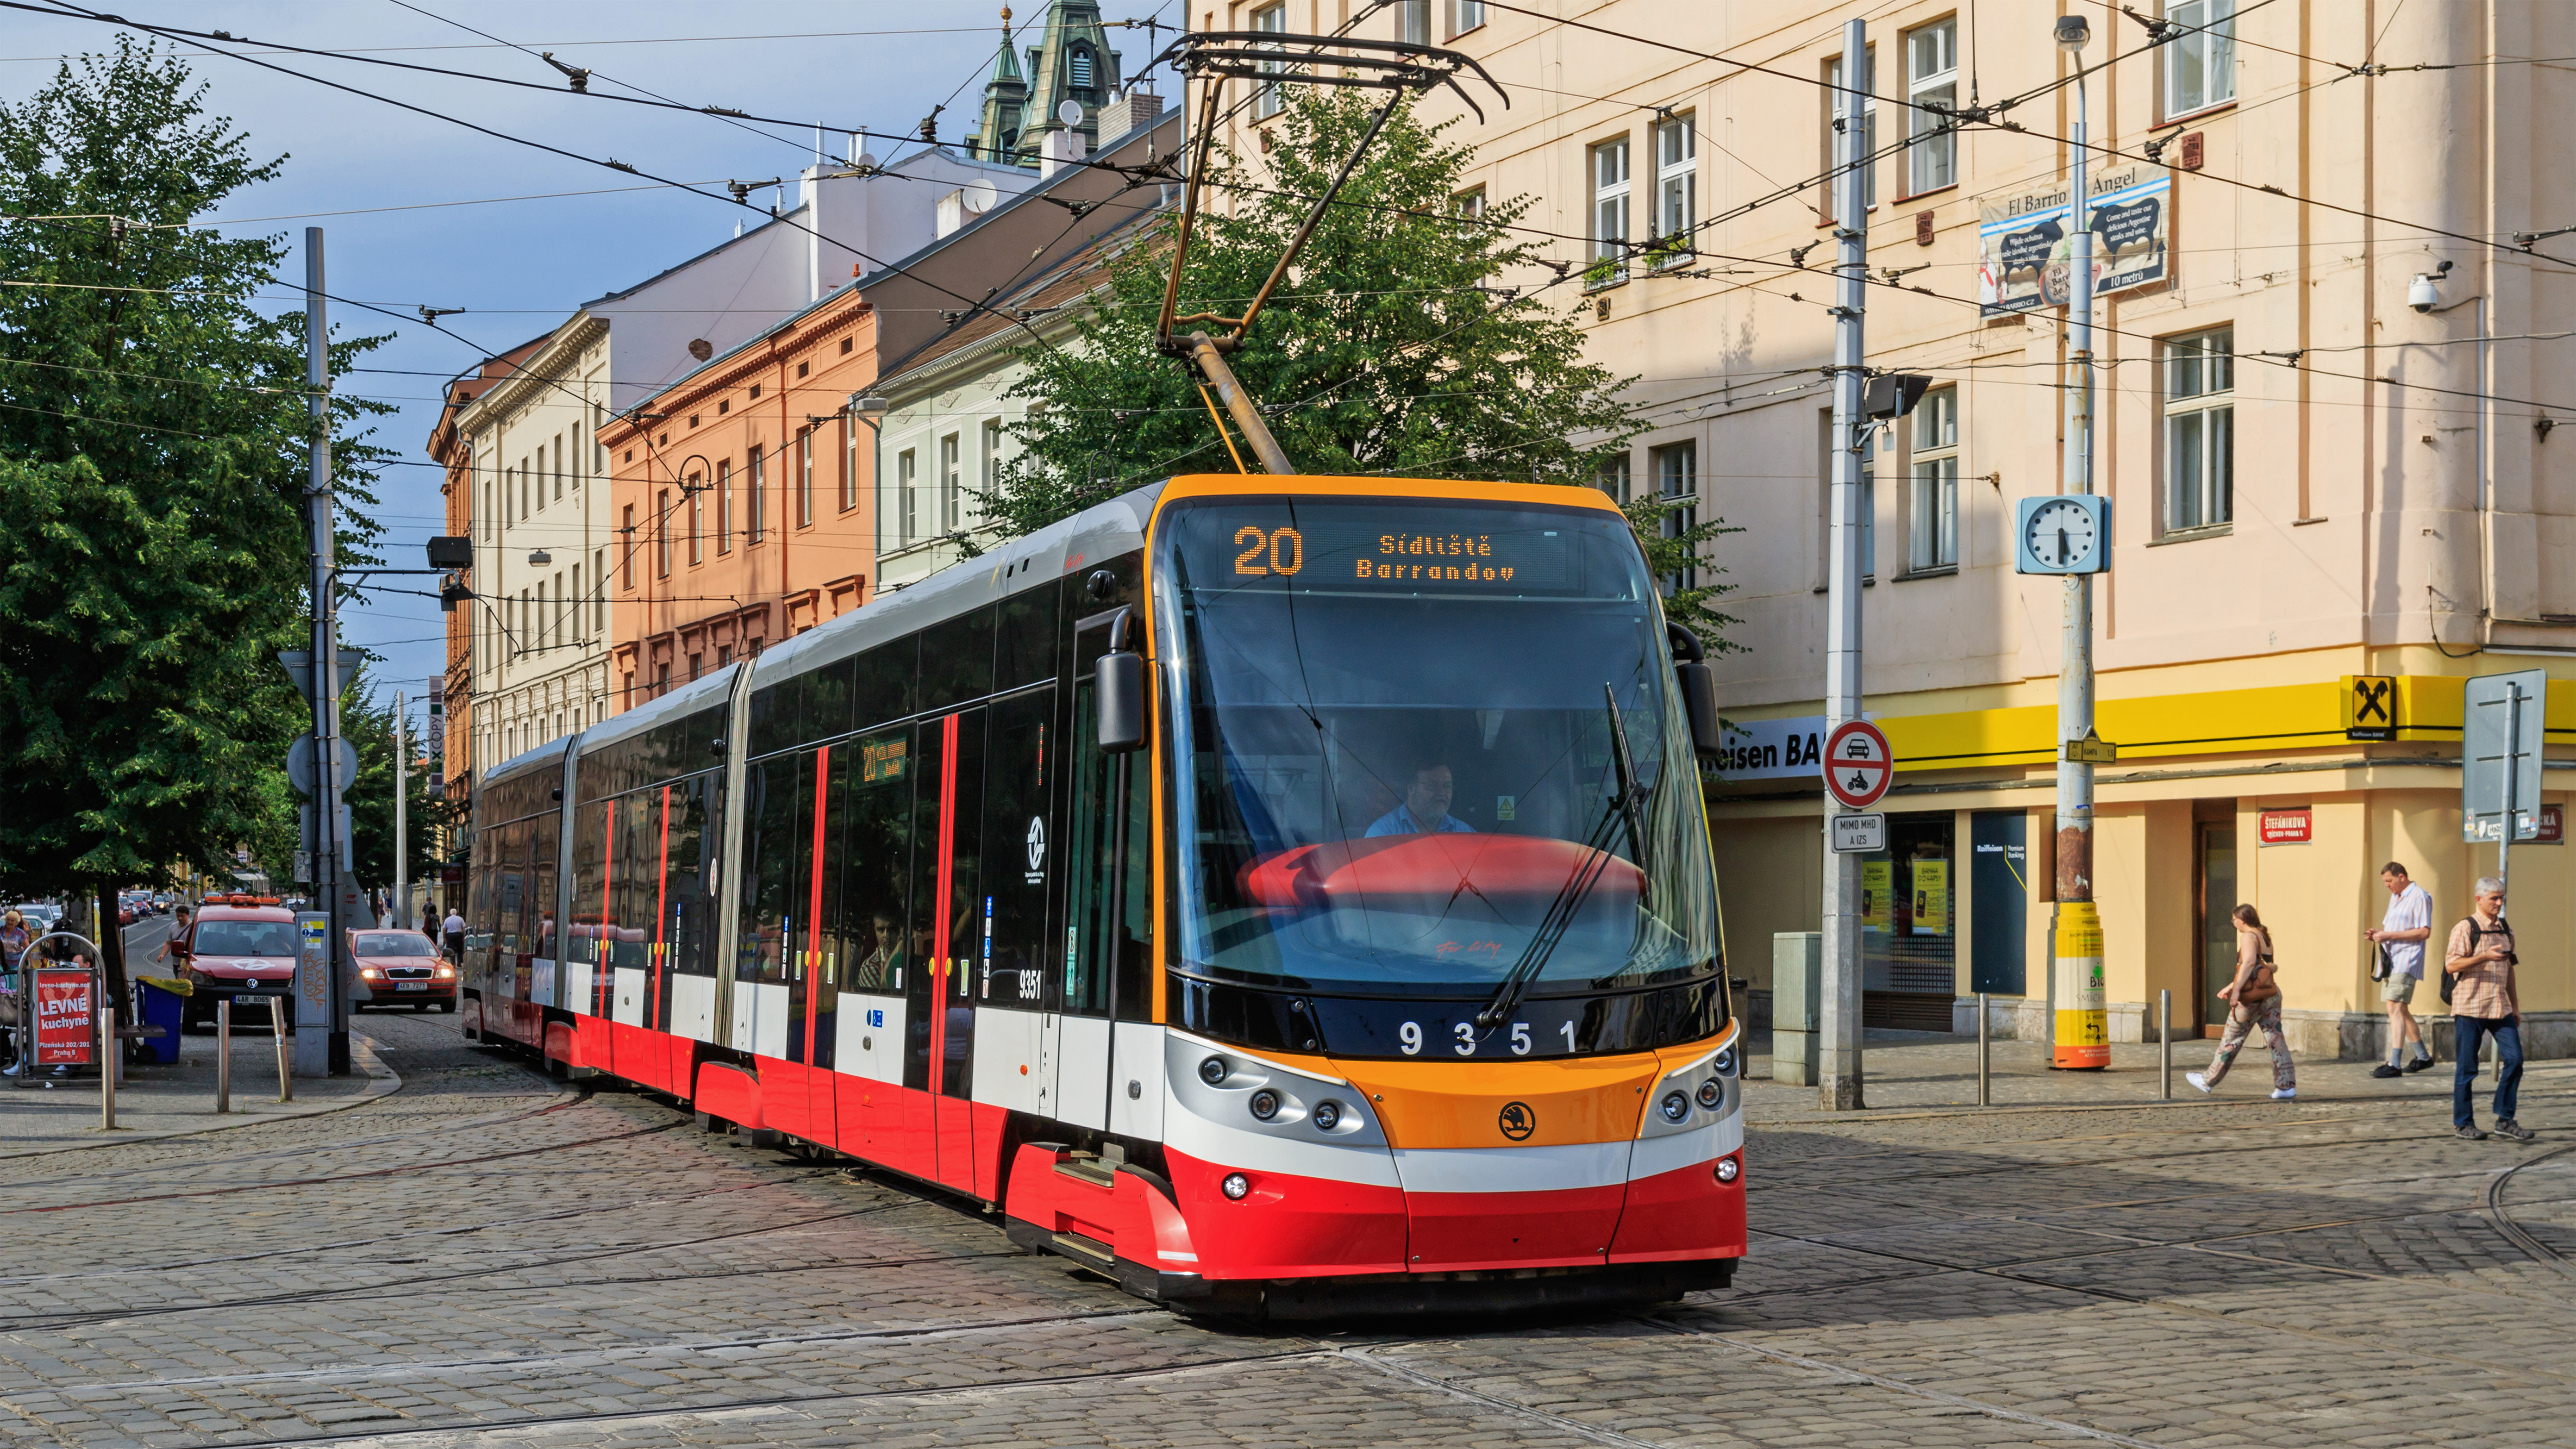 Prague 07-2016 tram at Andel img1